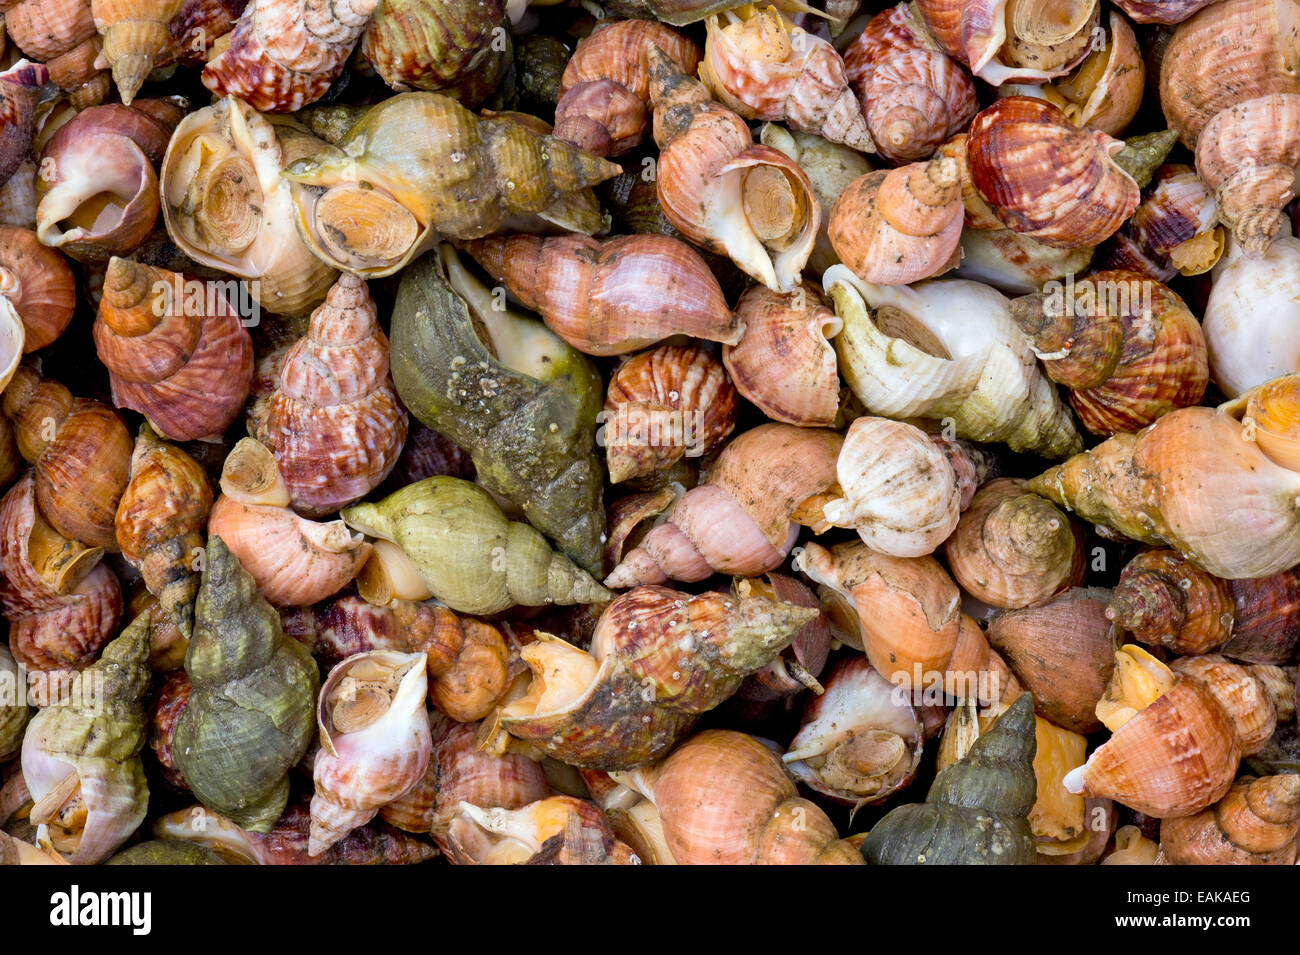 Mussels in shells, Faroe Islands, Denmark Stock Photo